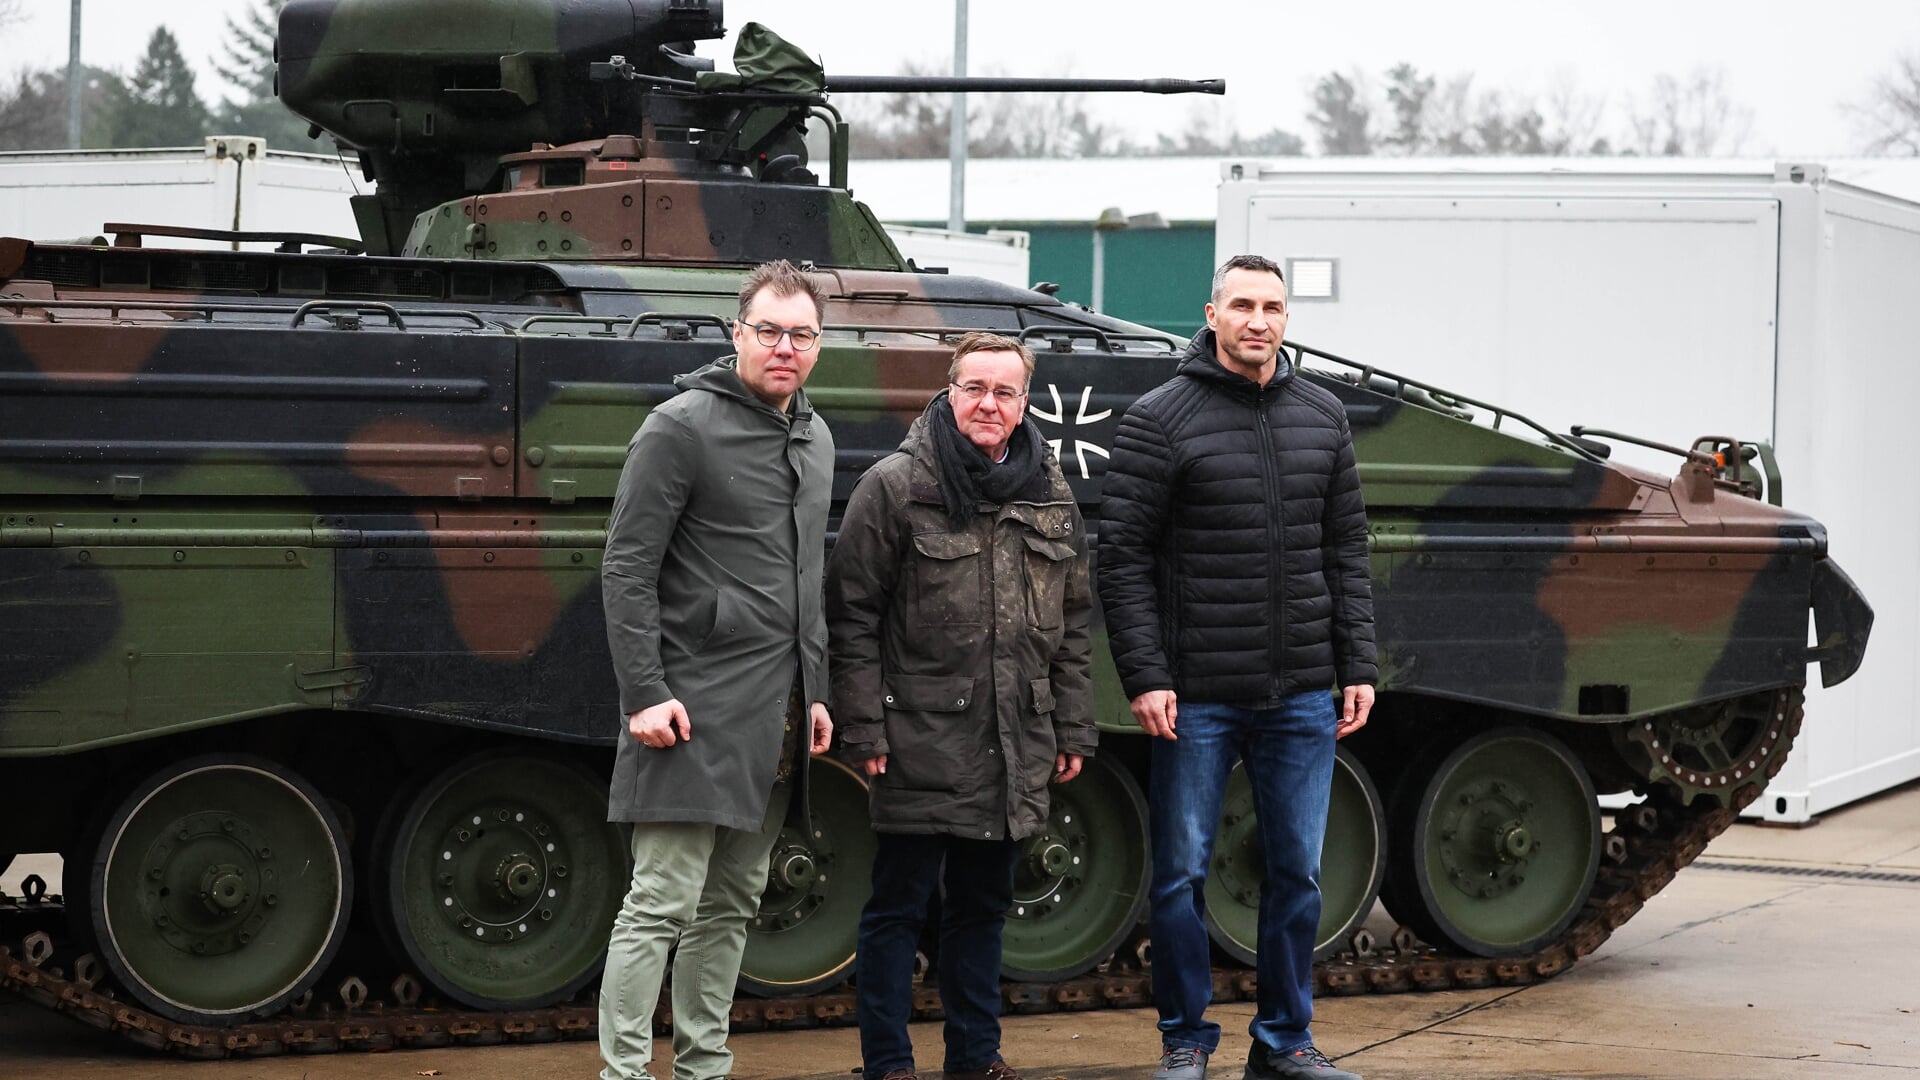 Forsvarsminister Boris Pistorius besøgte de ukrainske soldater sammen med den ukrainske ambassadør i Tyskland, Oleksij Makejev og Volodymyr Klytjko, der er bror til Kyivs borgmester, Vitalij Klytjko. Foto: 